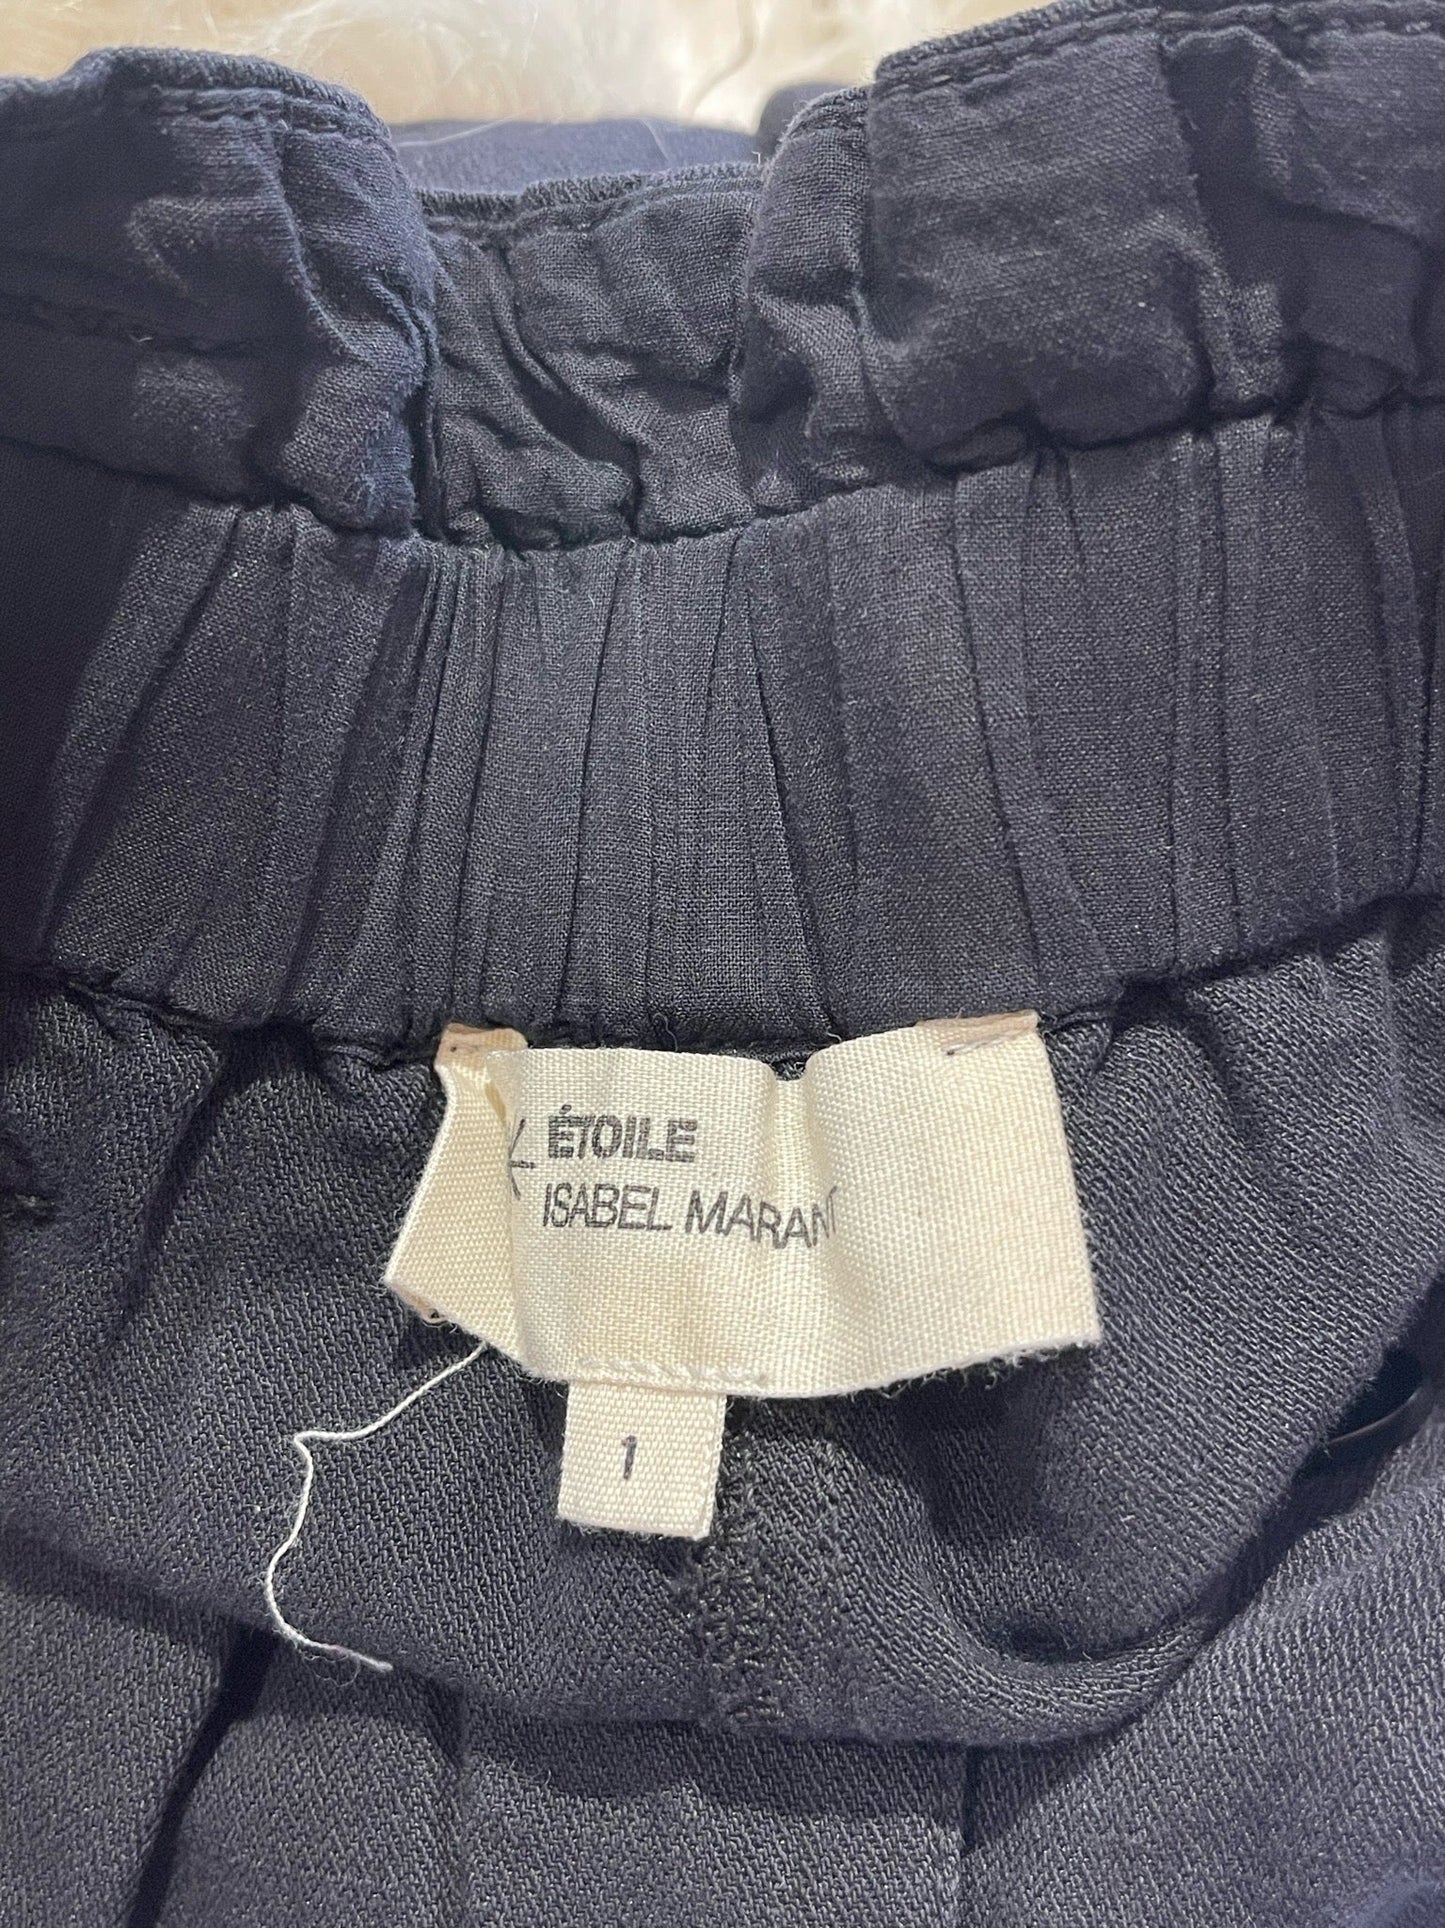 Pantalon Isabel Marant noir T.1